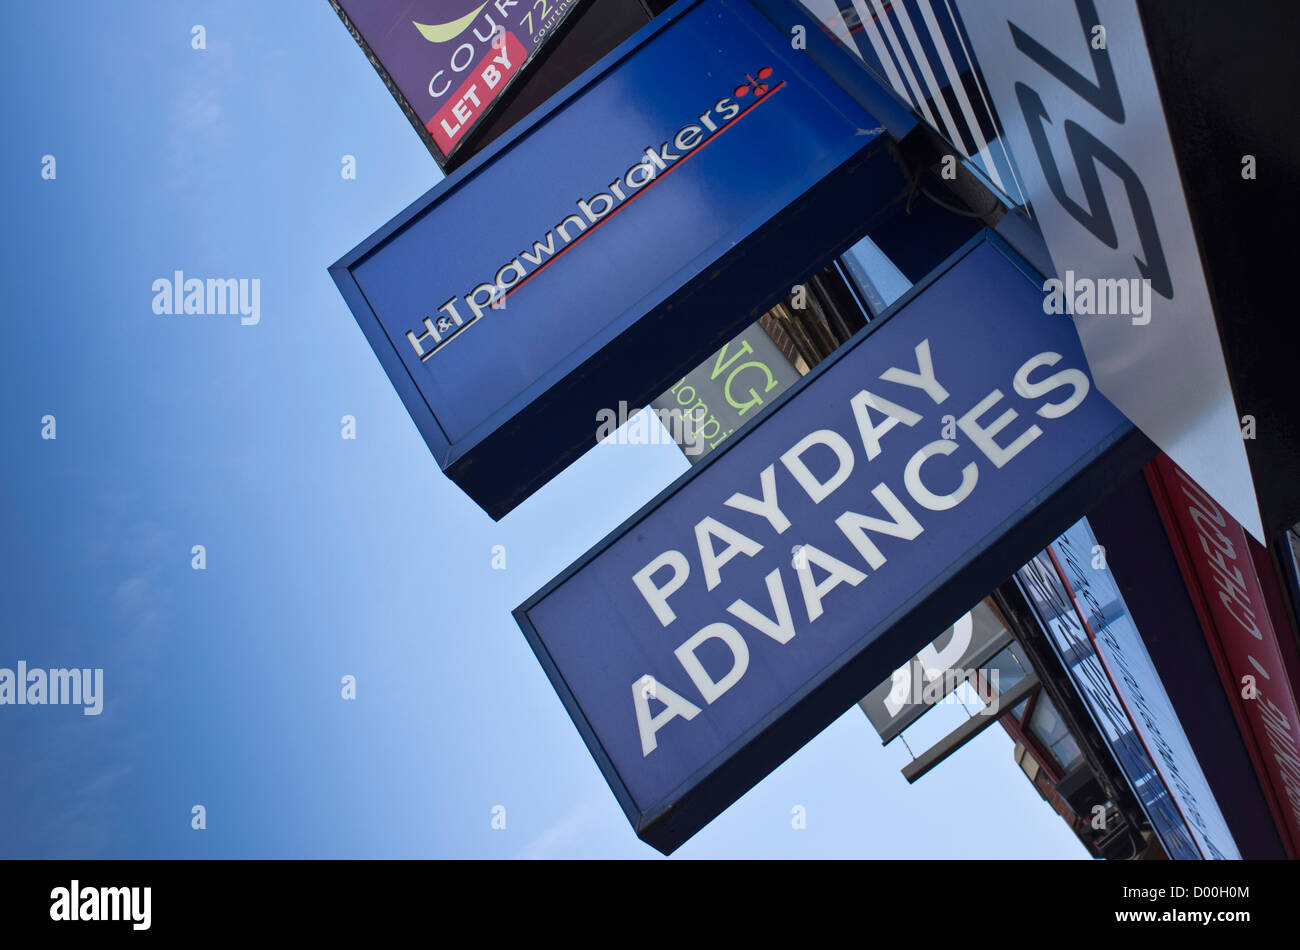 High street panneaux pour le paiement des prêts, avances sur salaire prêteur sur gage et boutiques dans Dalston, Londres, Royaume-Uni. Banque D'Images